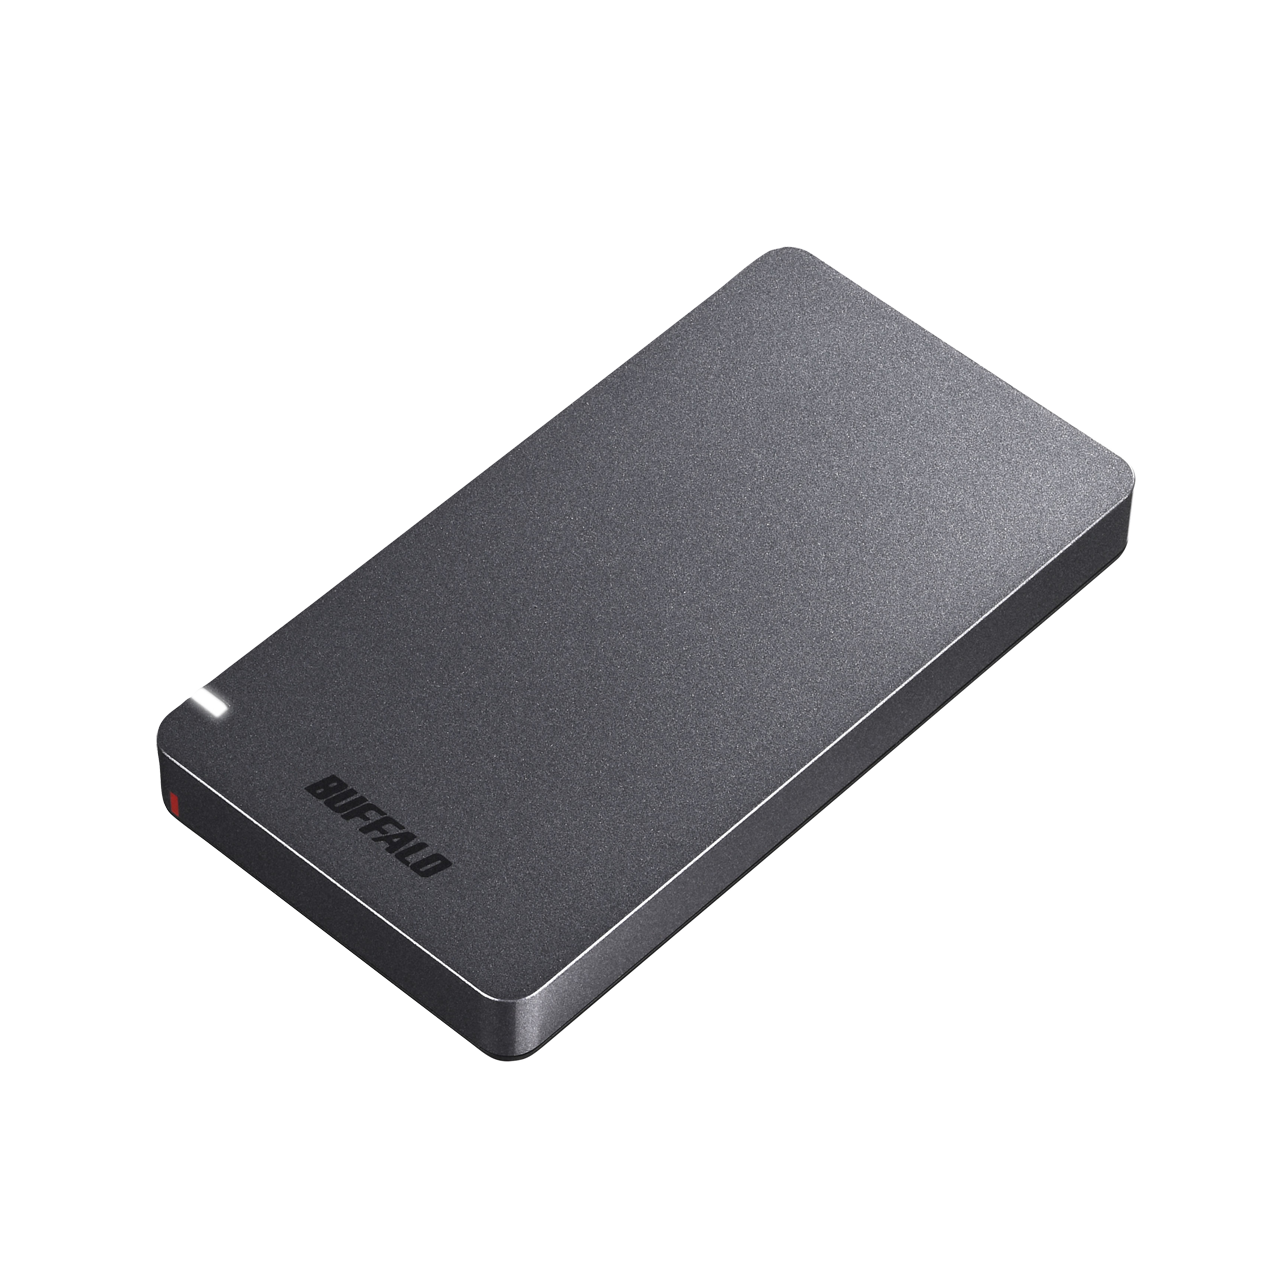 SSD-PGM480U3-B